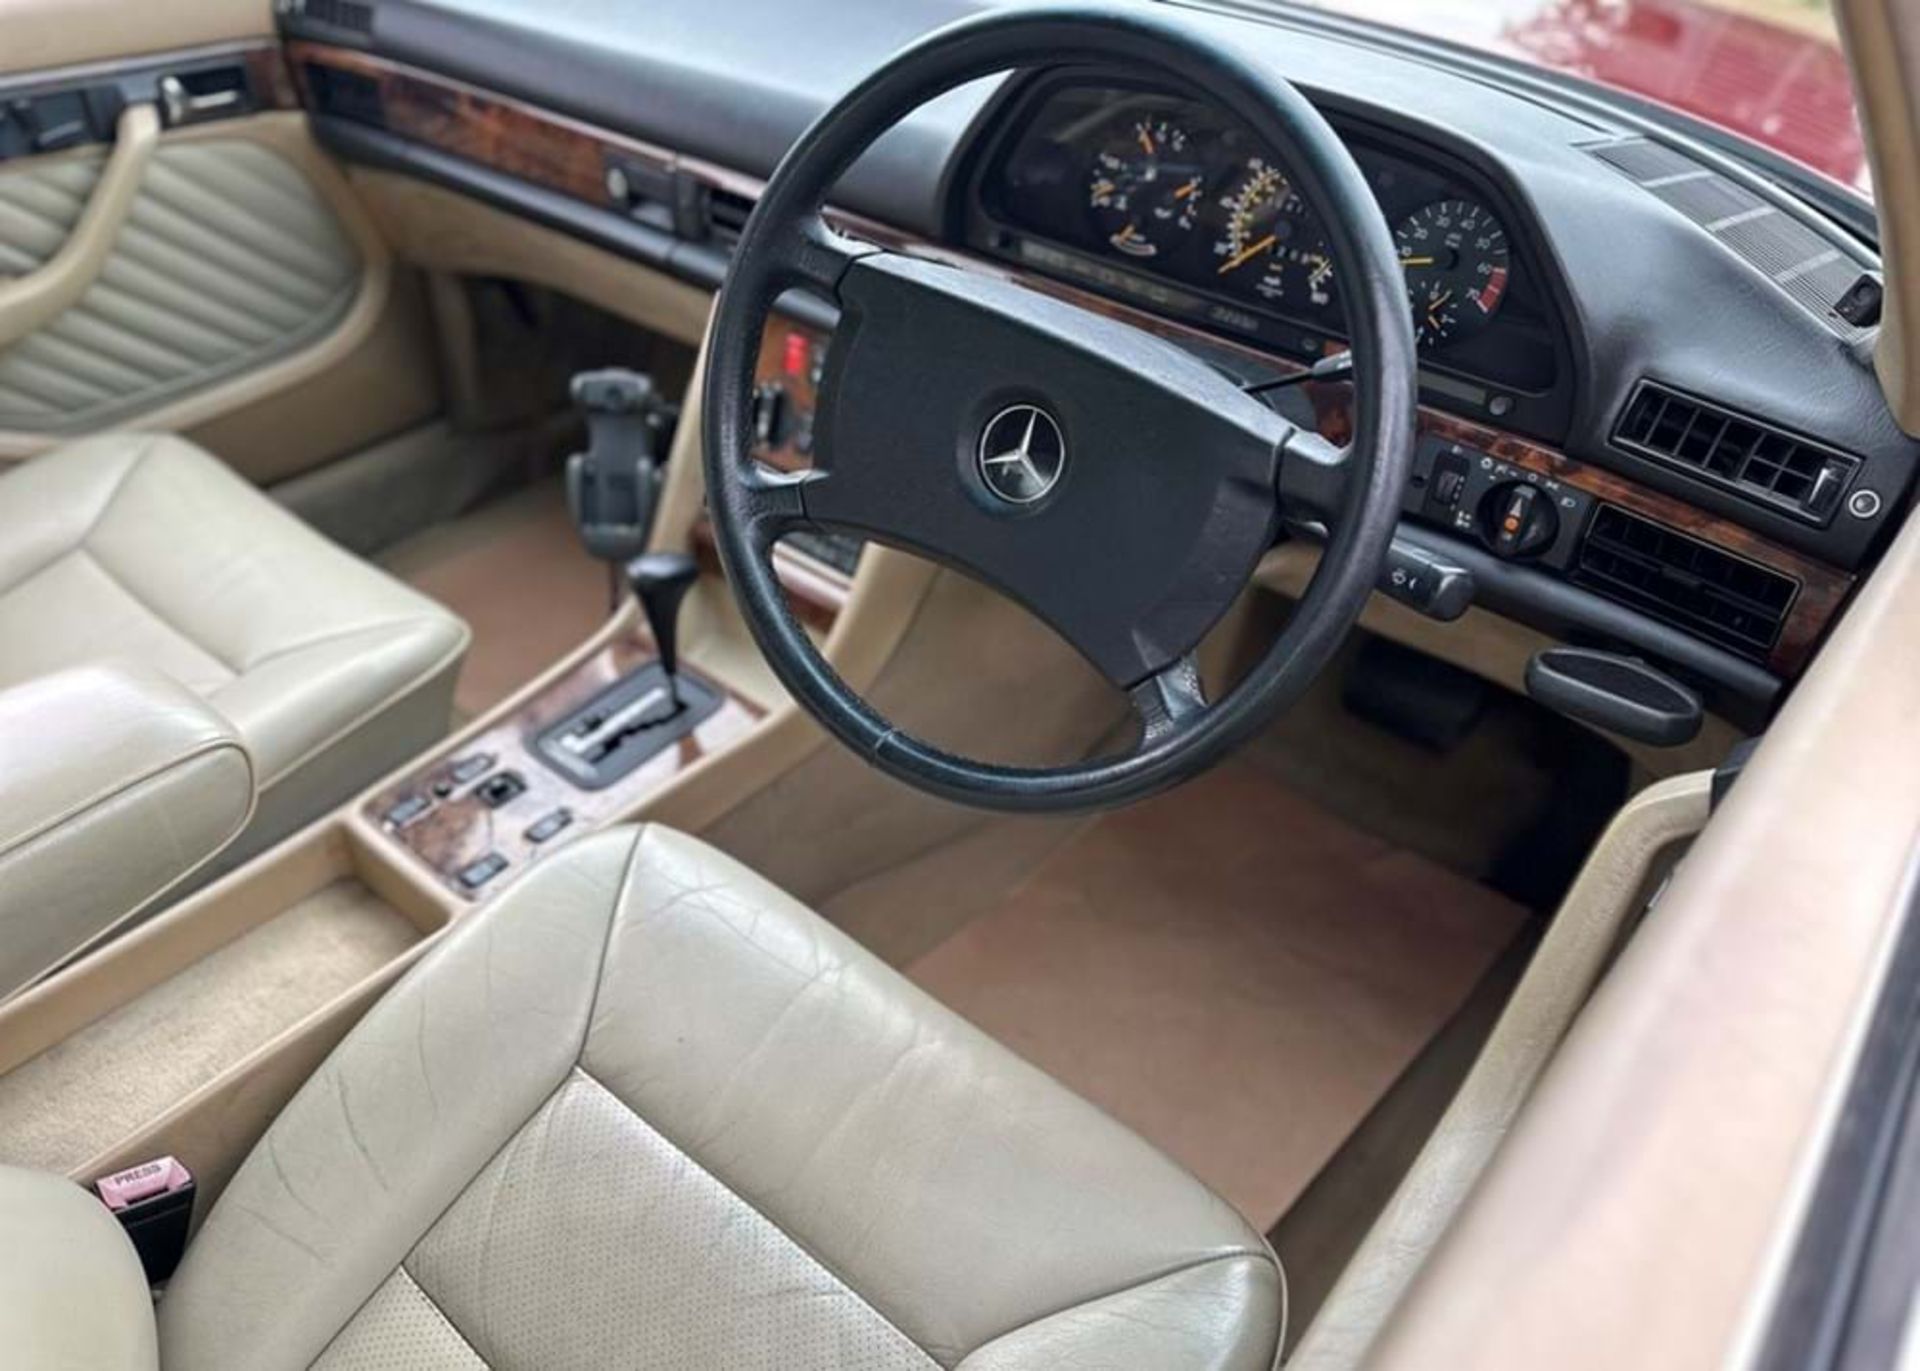 1991 Mercedes-Benz 300 SE - Image 6 of 10